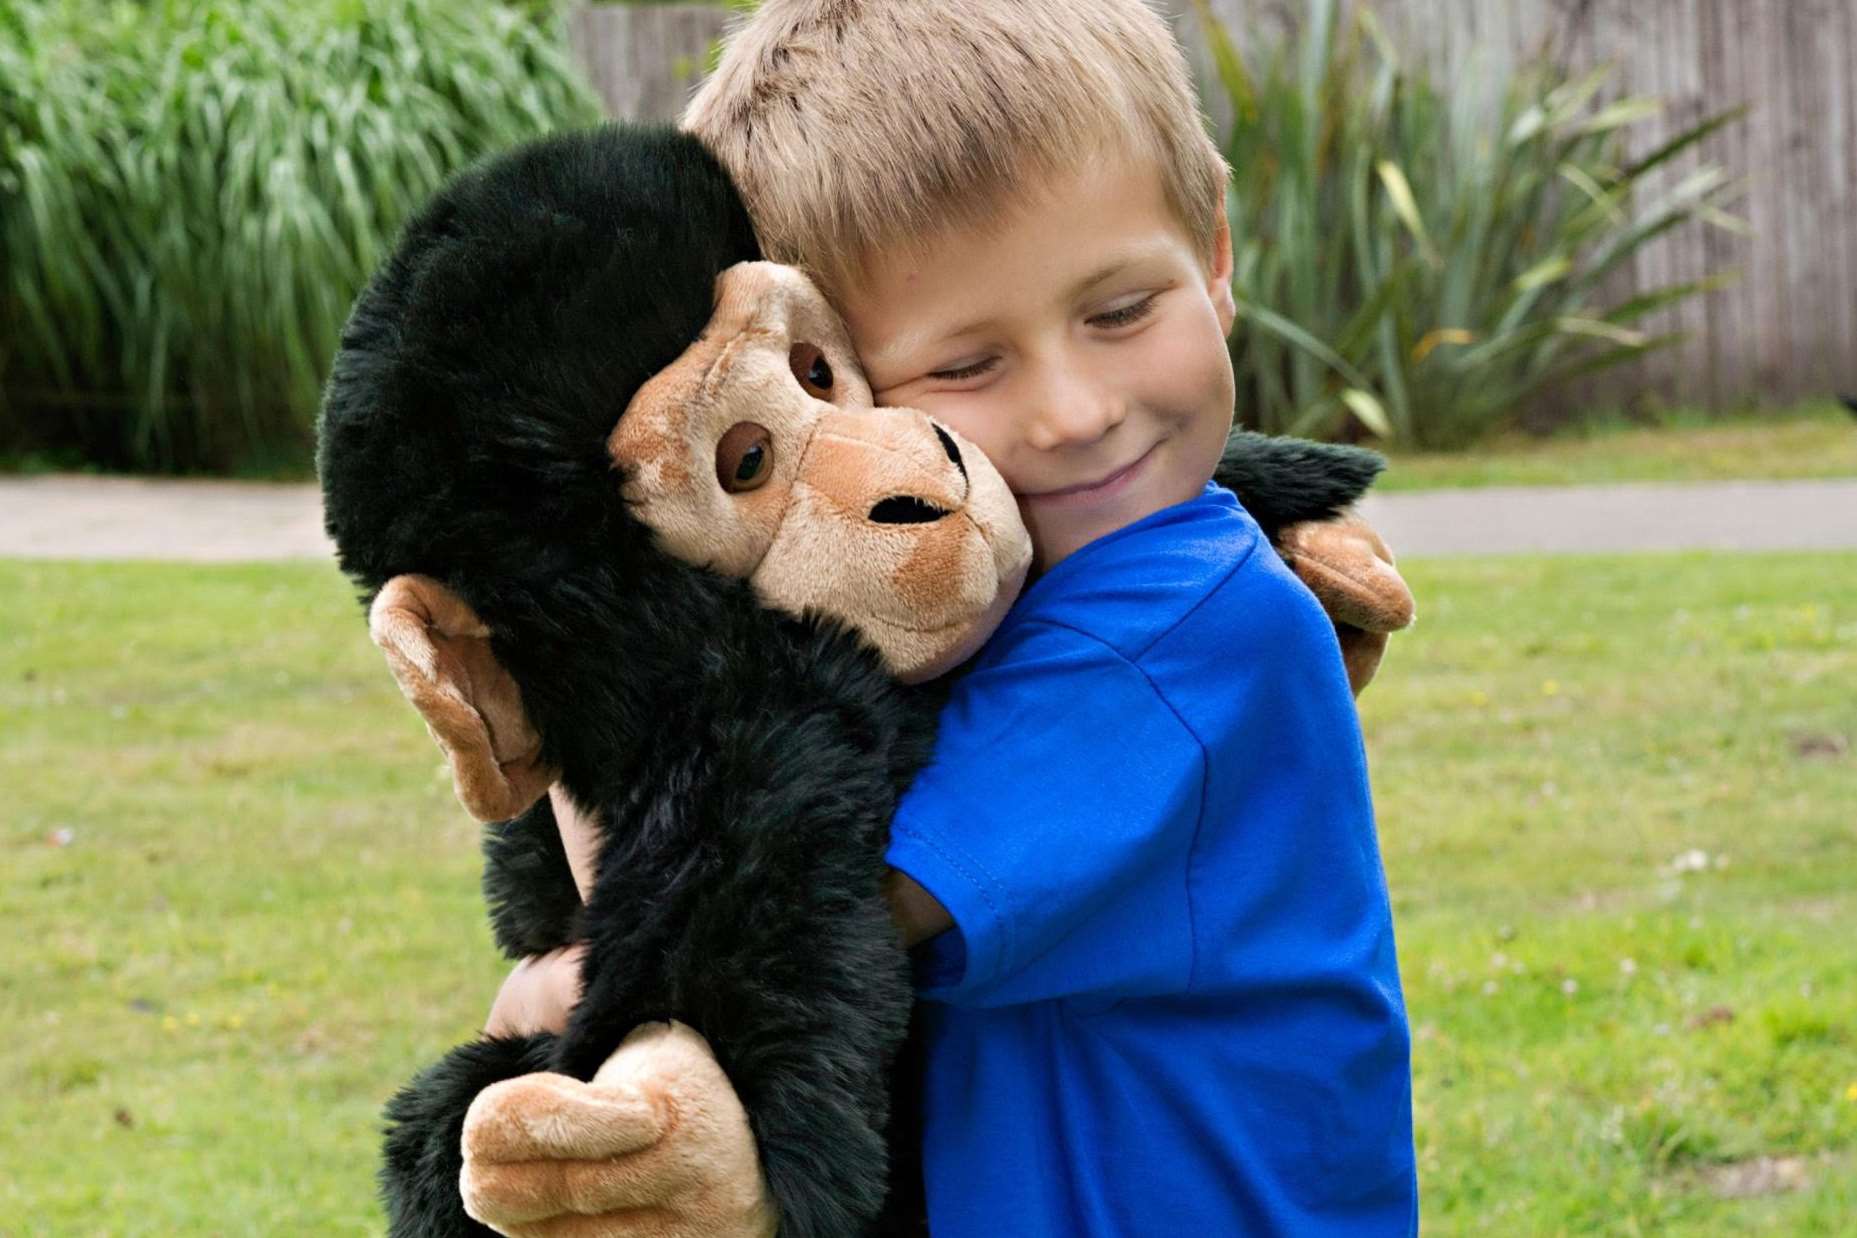 Monkey fan Harry Walton, 6, from Ashford